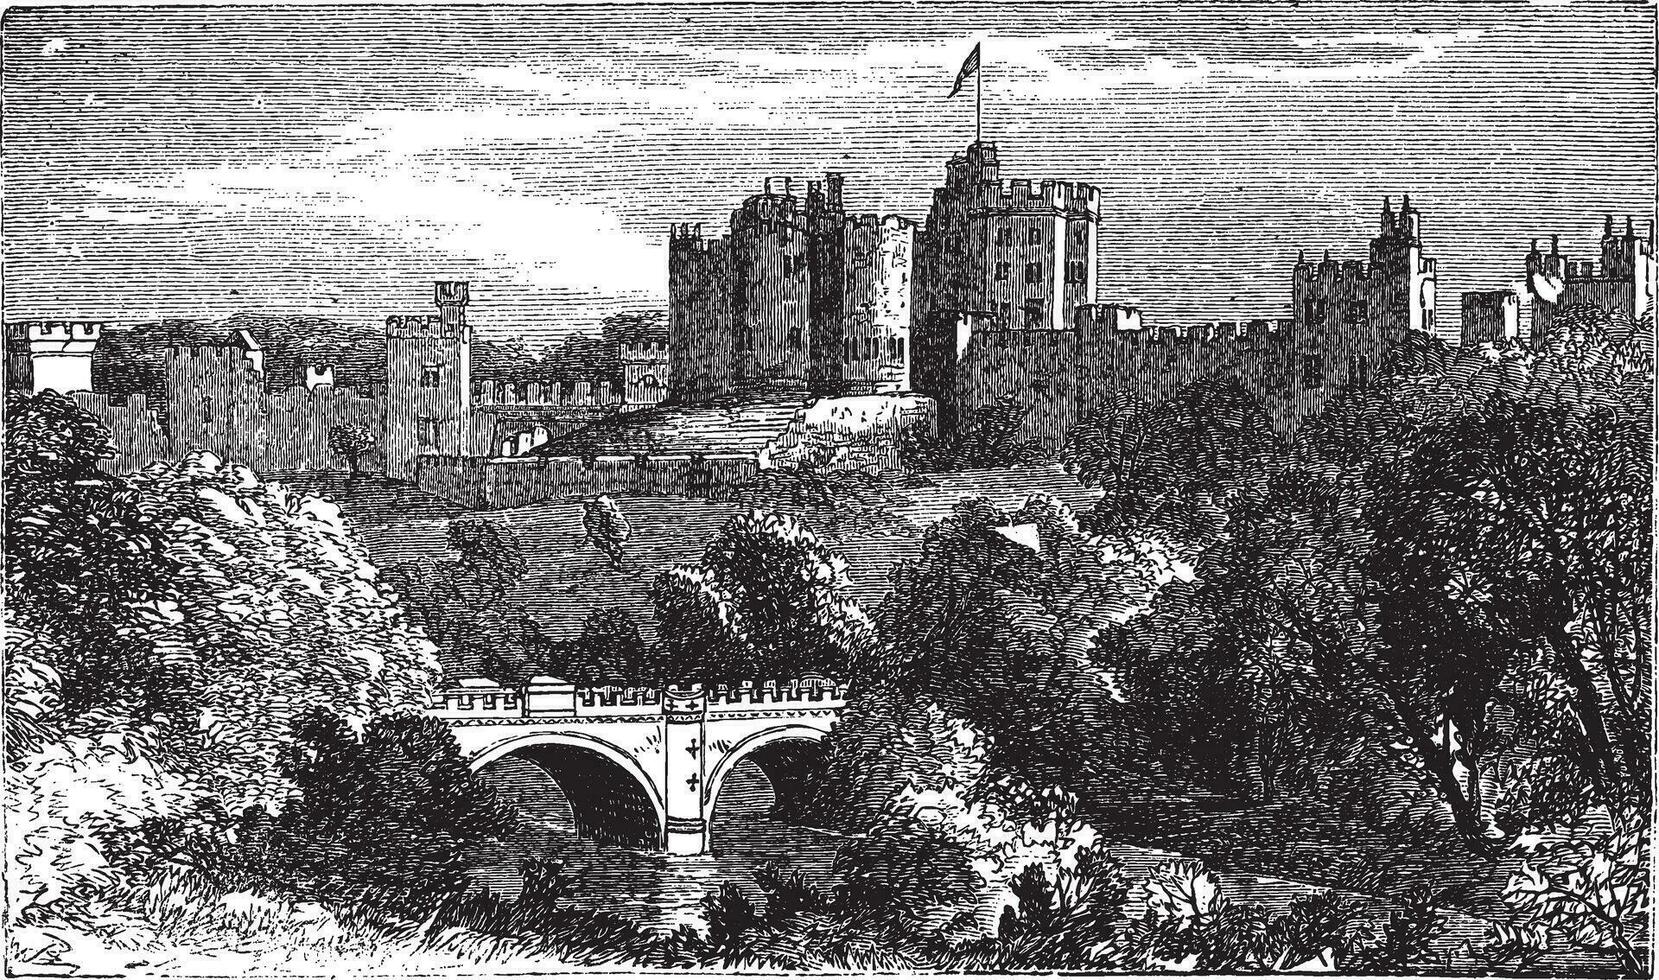 alnwick slott, i alnwick, Northumberland grevskap. 1890 årgång graverat illustration. vektor